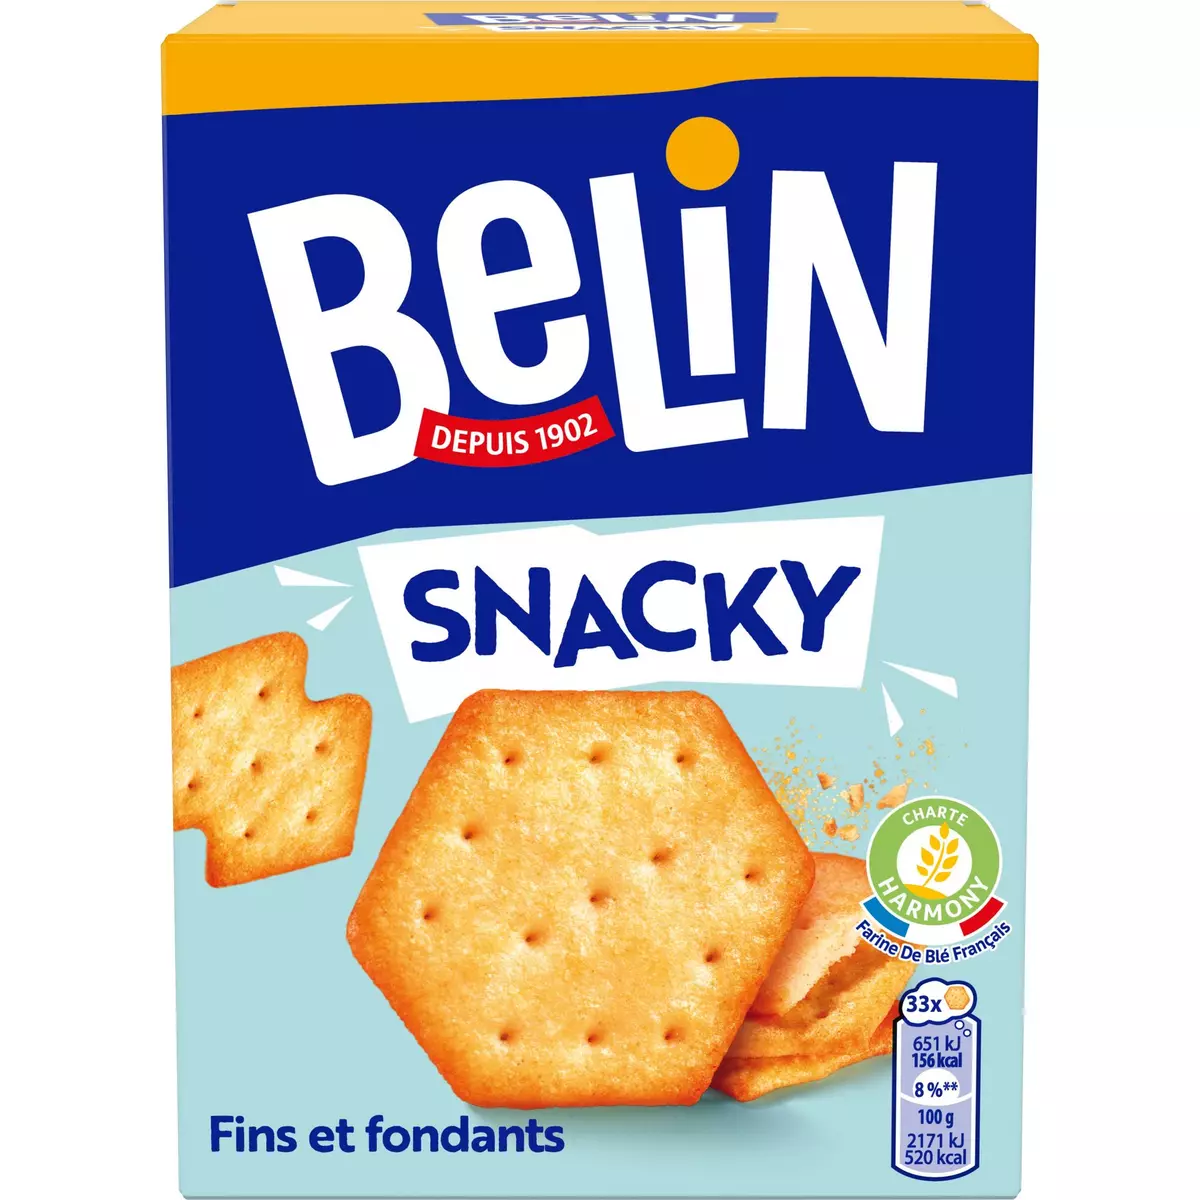 BELIN Biscuits crackers Snacky fins et fondants 100g